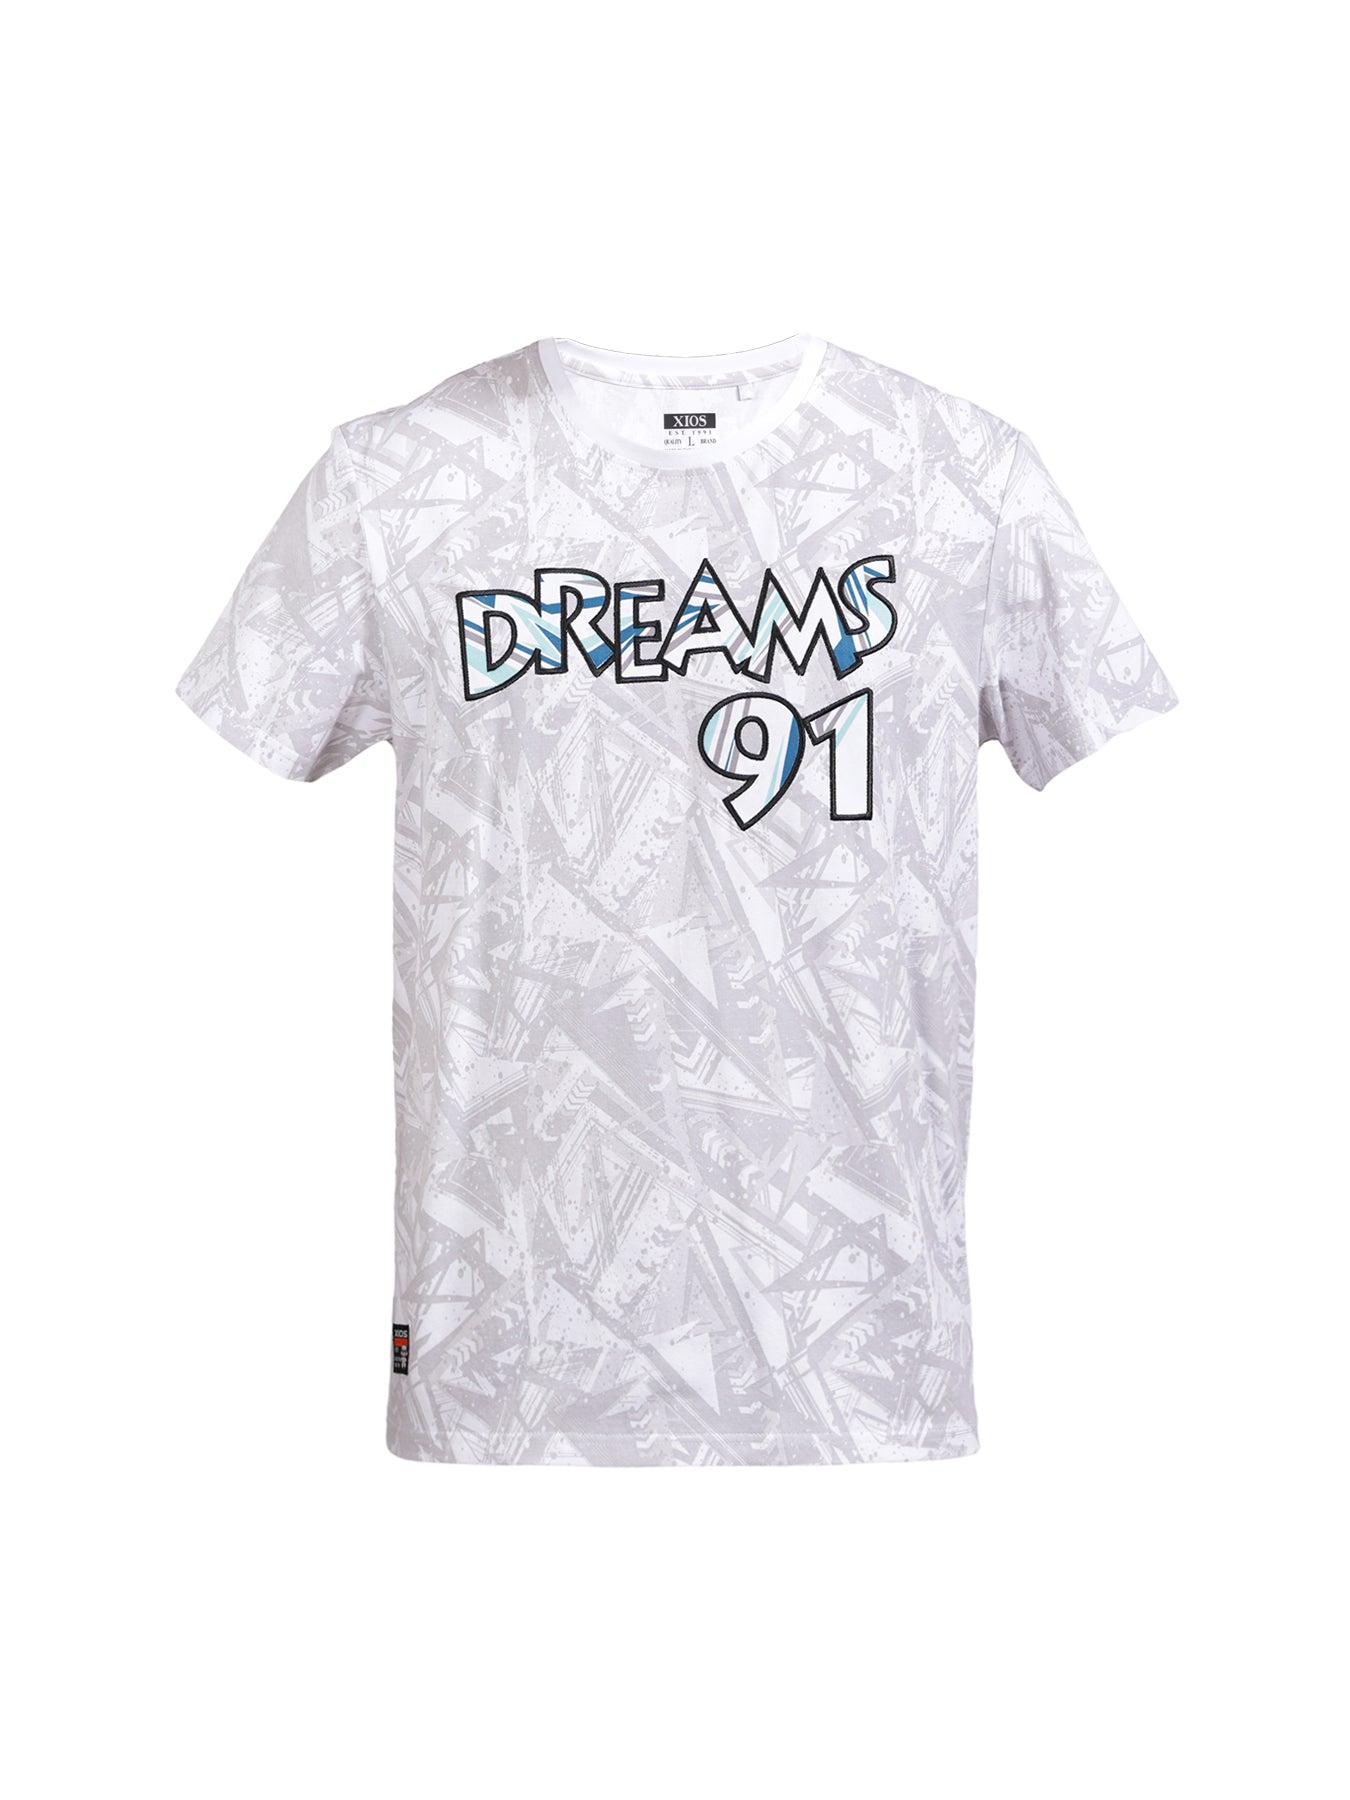 "Dreams 91" Graphic Tee